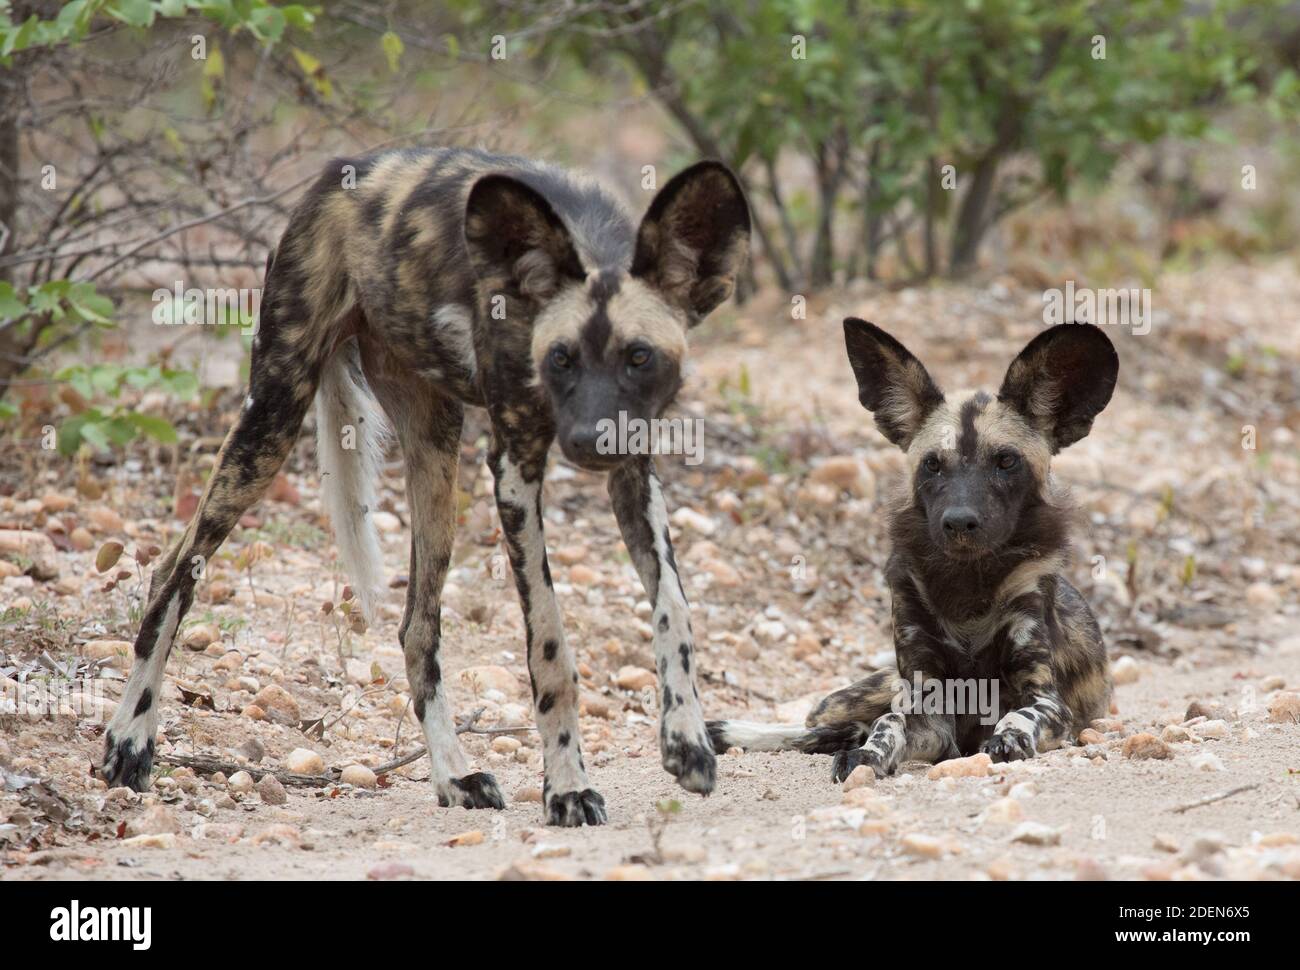 Deux jeunes chiots de chiens sauvages africains à côté d'une route de terre dans le parc national de Mana pools, au Zimbabwe. Aussi appelés loups peints, ils sont une espèce en voie de disparition. Banque D'Images